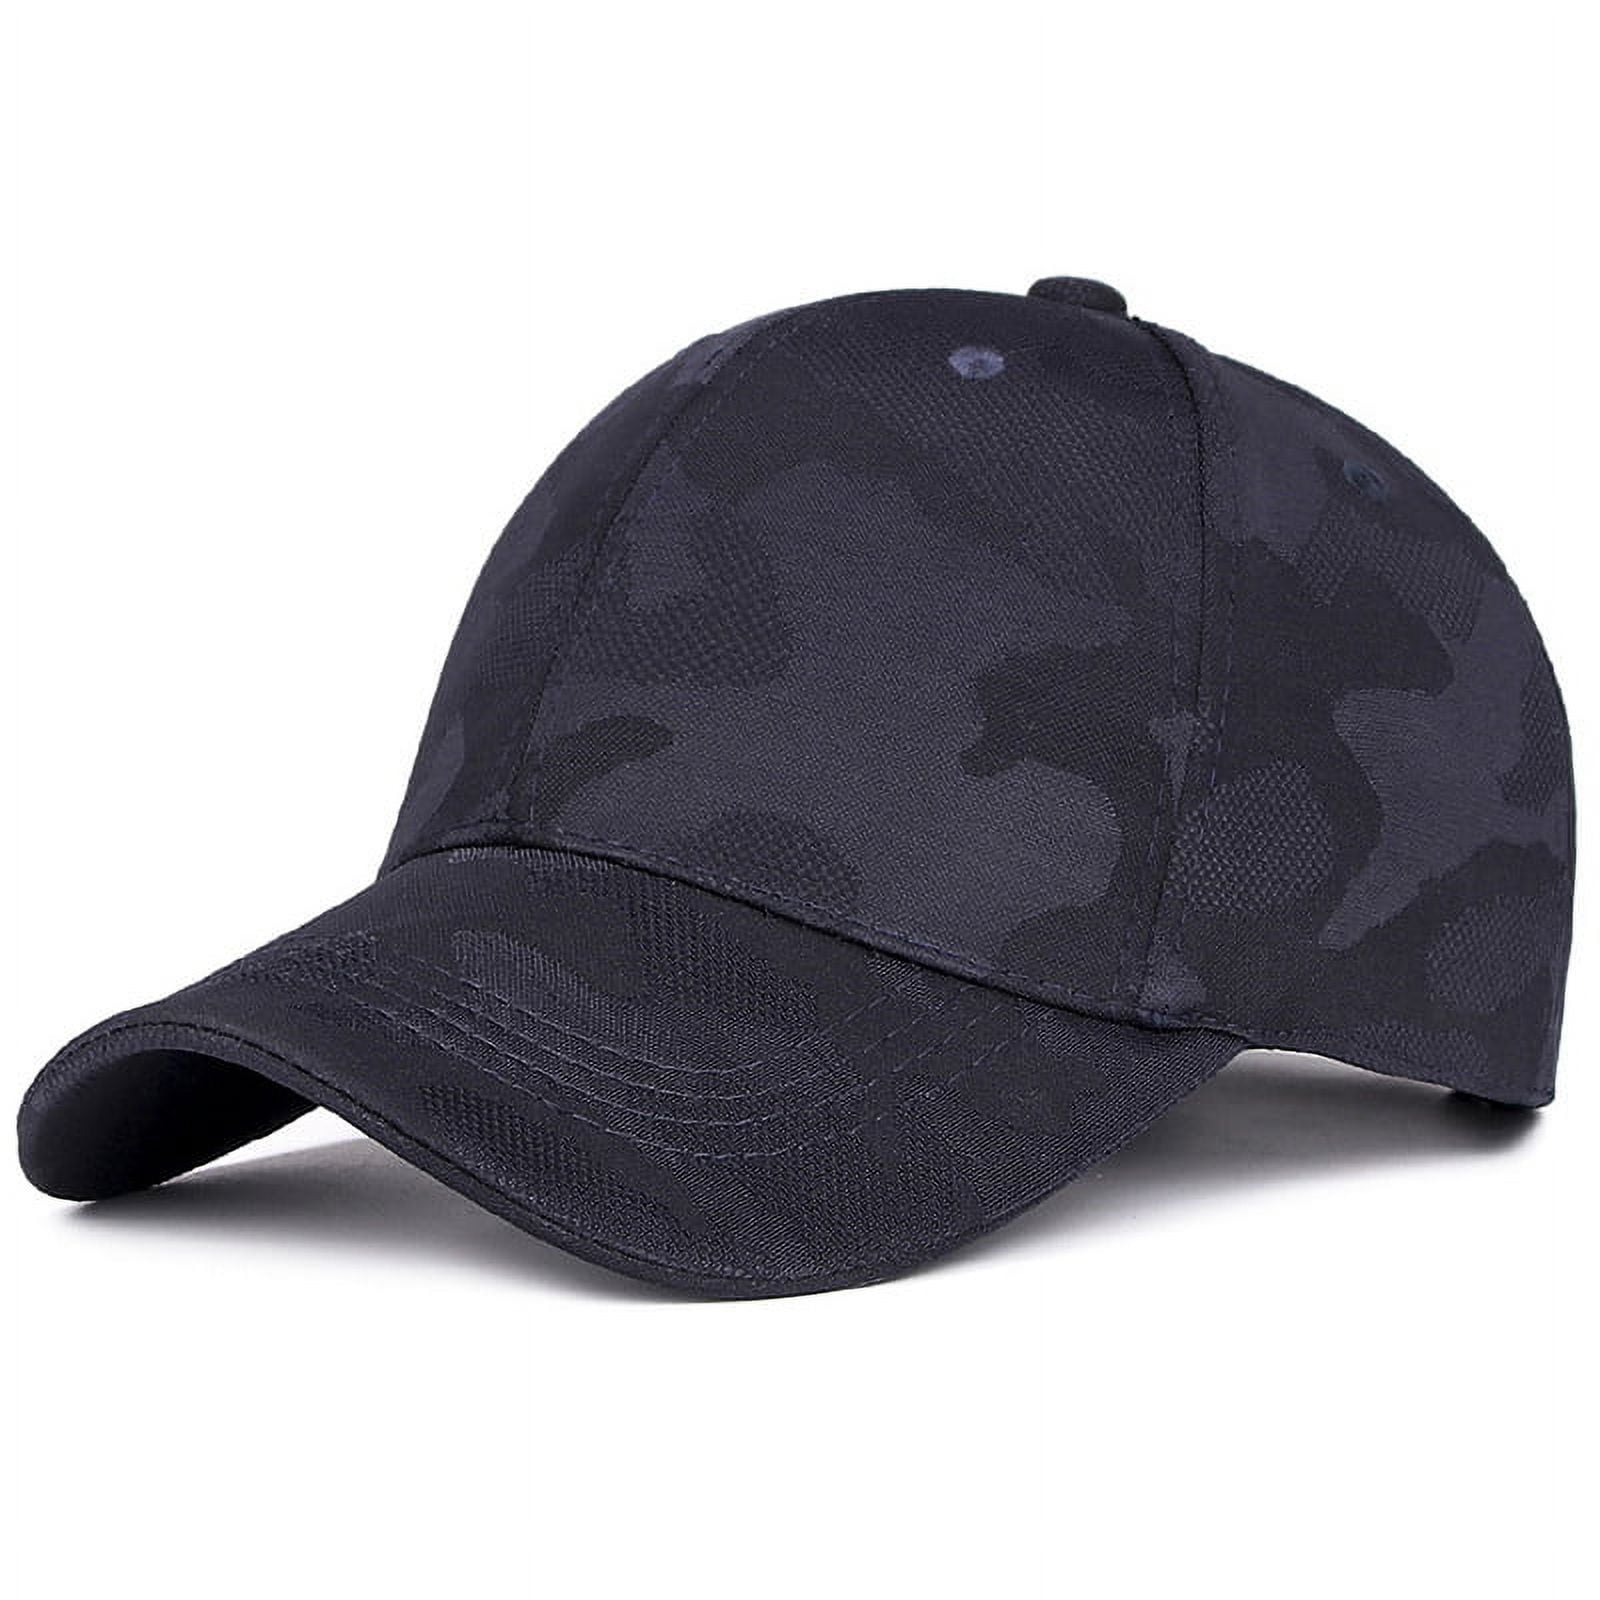 Camouflage Cap Tactical Baseball Caps Motorcycle Tennis Sport Hats Outdoor Camo  Hat for Men Women New 